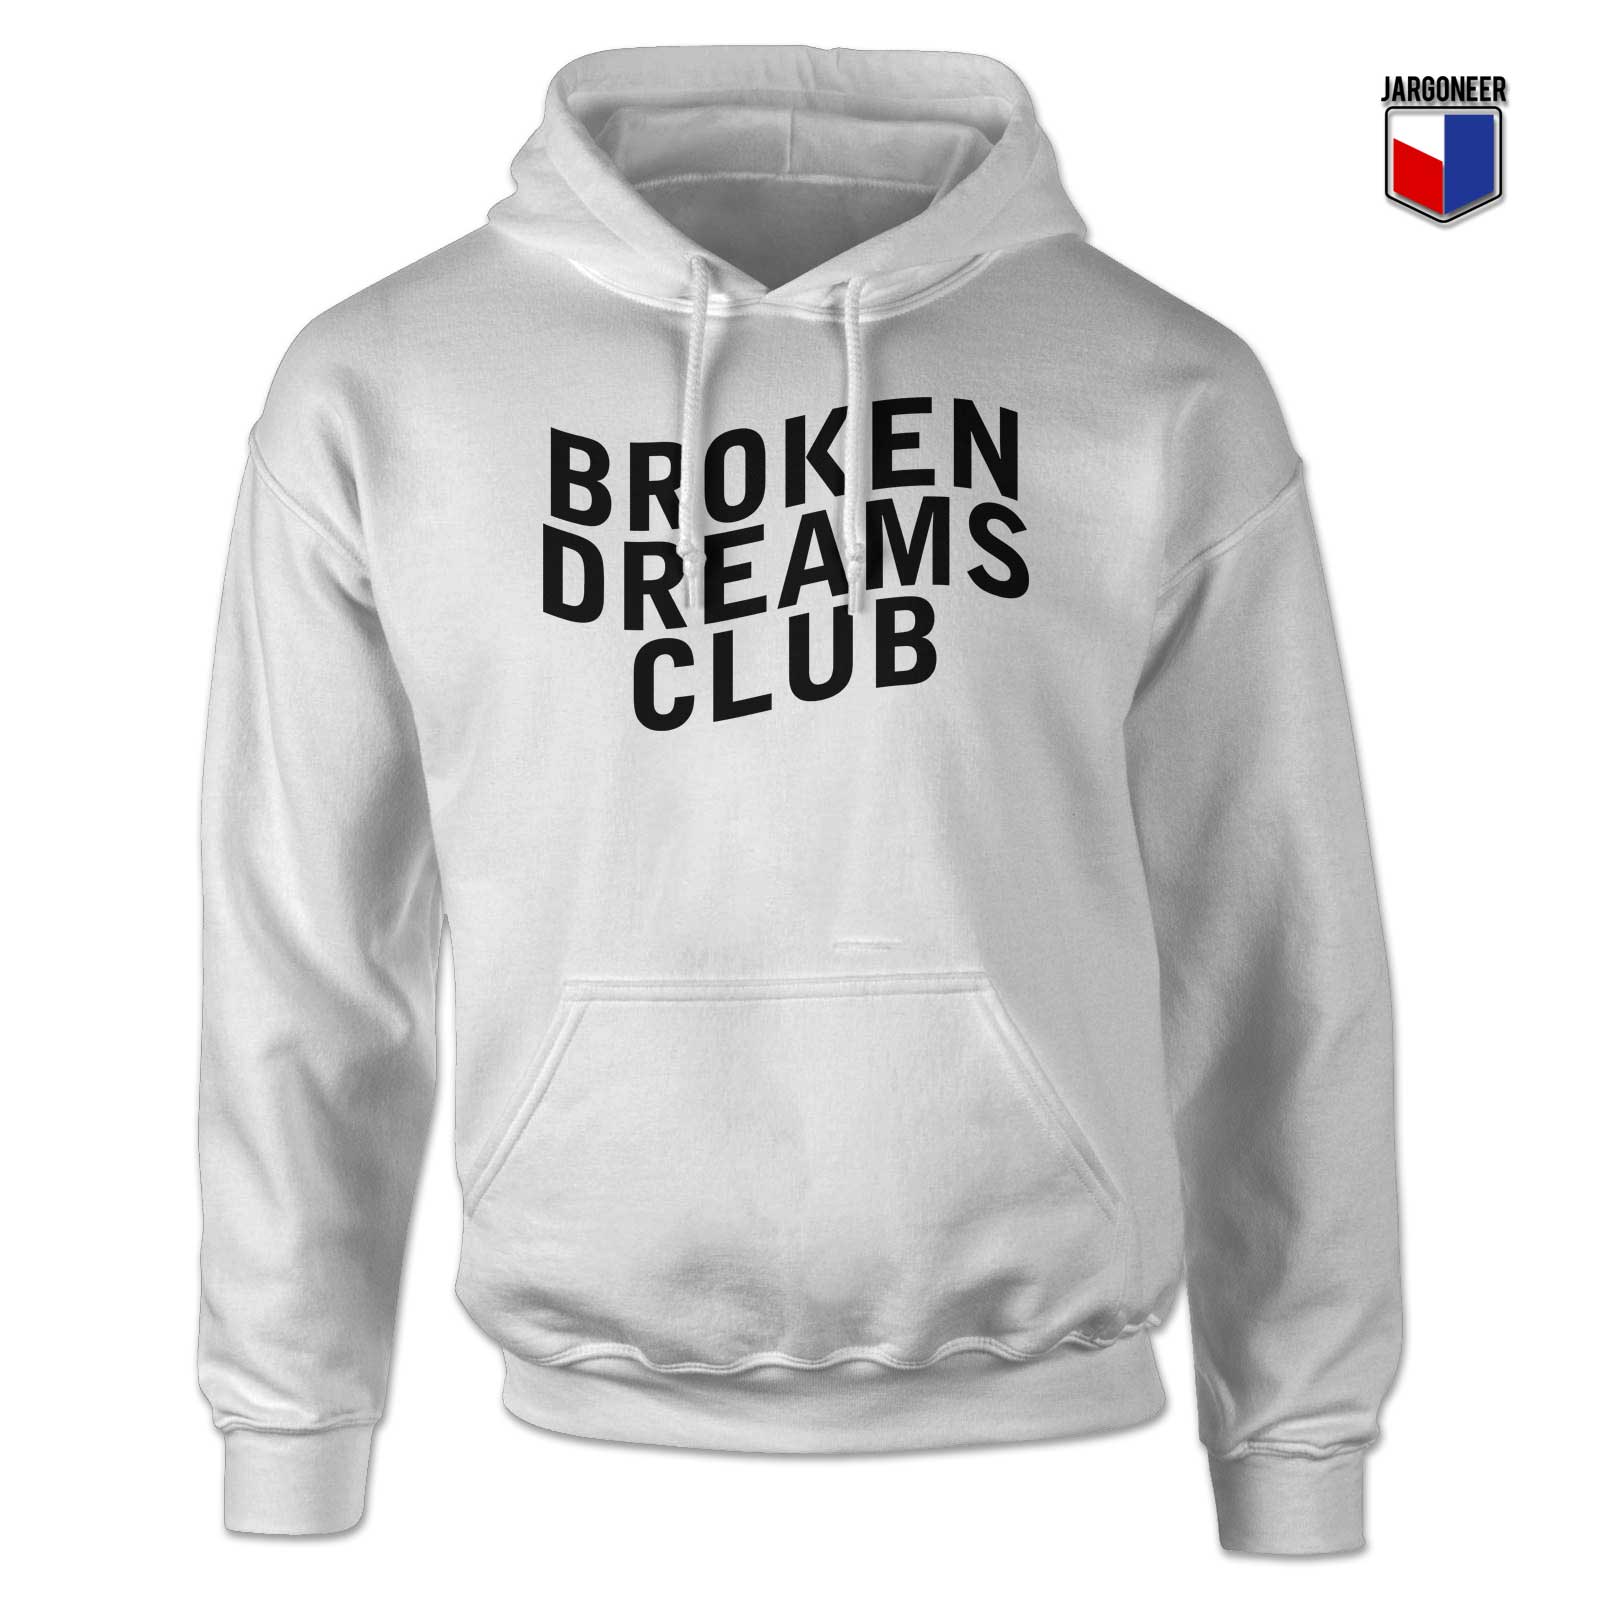 Broken Dreams Club 2 - Shop Unique Graphic Cool Shirt Designs